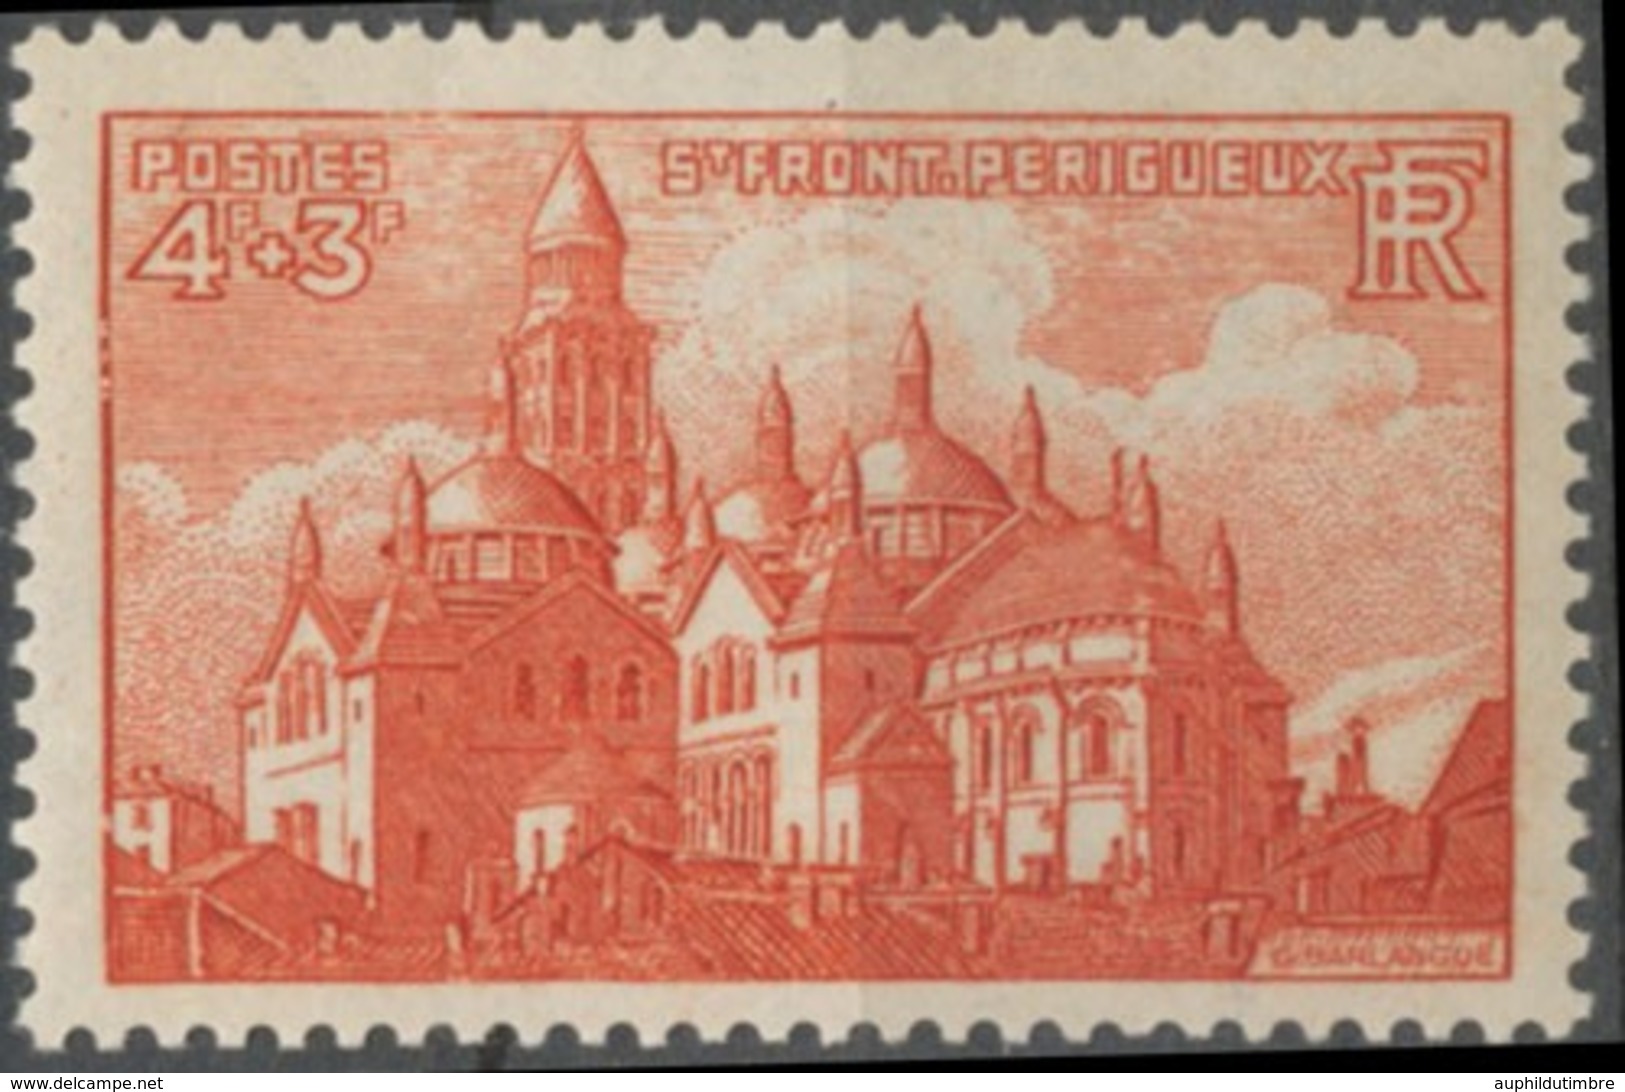 Cathédrales Et Basiliques. Saint-Front, De Périgueux 4f.+3f. Brun-rouge Neuf Luxe ** Y774 - Ungebraucht